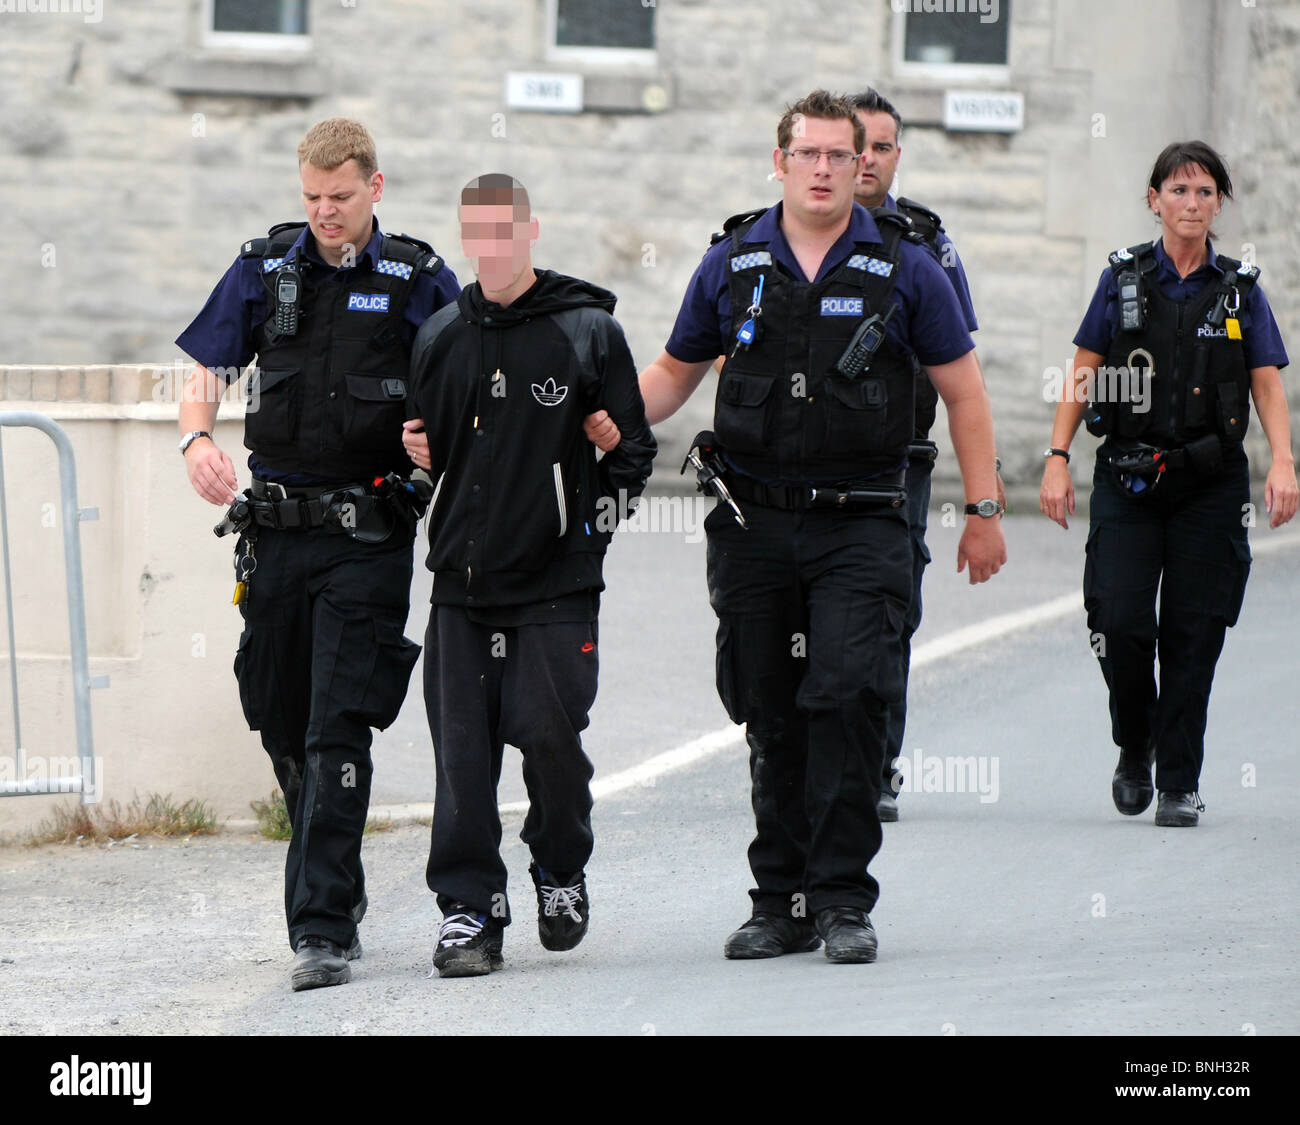 La policía arrestó a los jóvenes delincuentes (cara ha sido oscurecida), Gran Bretaña, REINO UNIDO Foto de stock